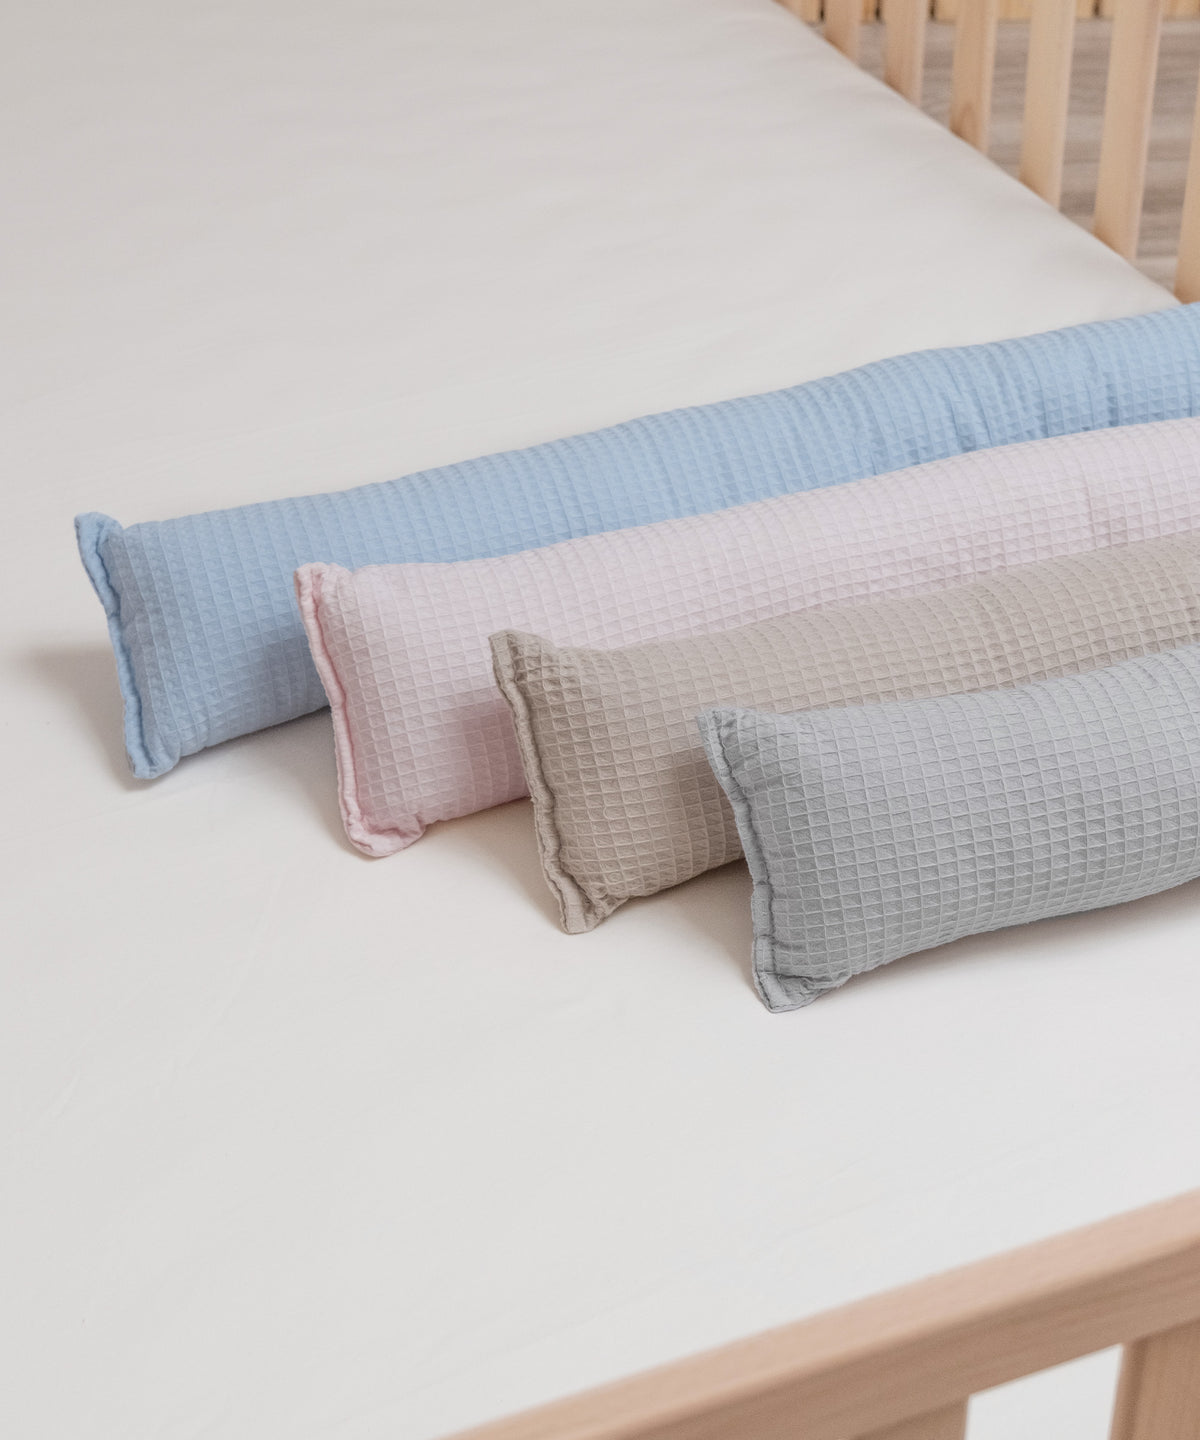 Vier Farben der Bettschlange aus Waffelpiquet liegen nebeneinander auf dem Bett.